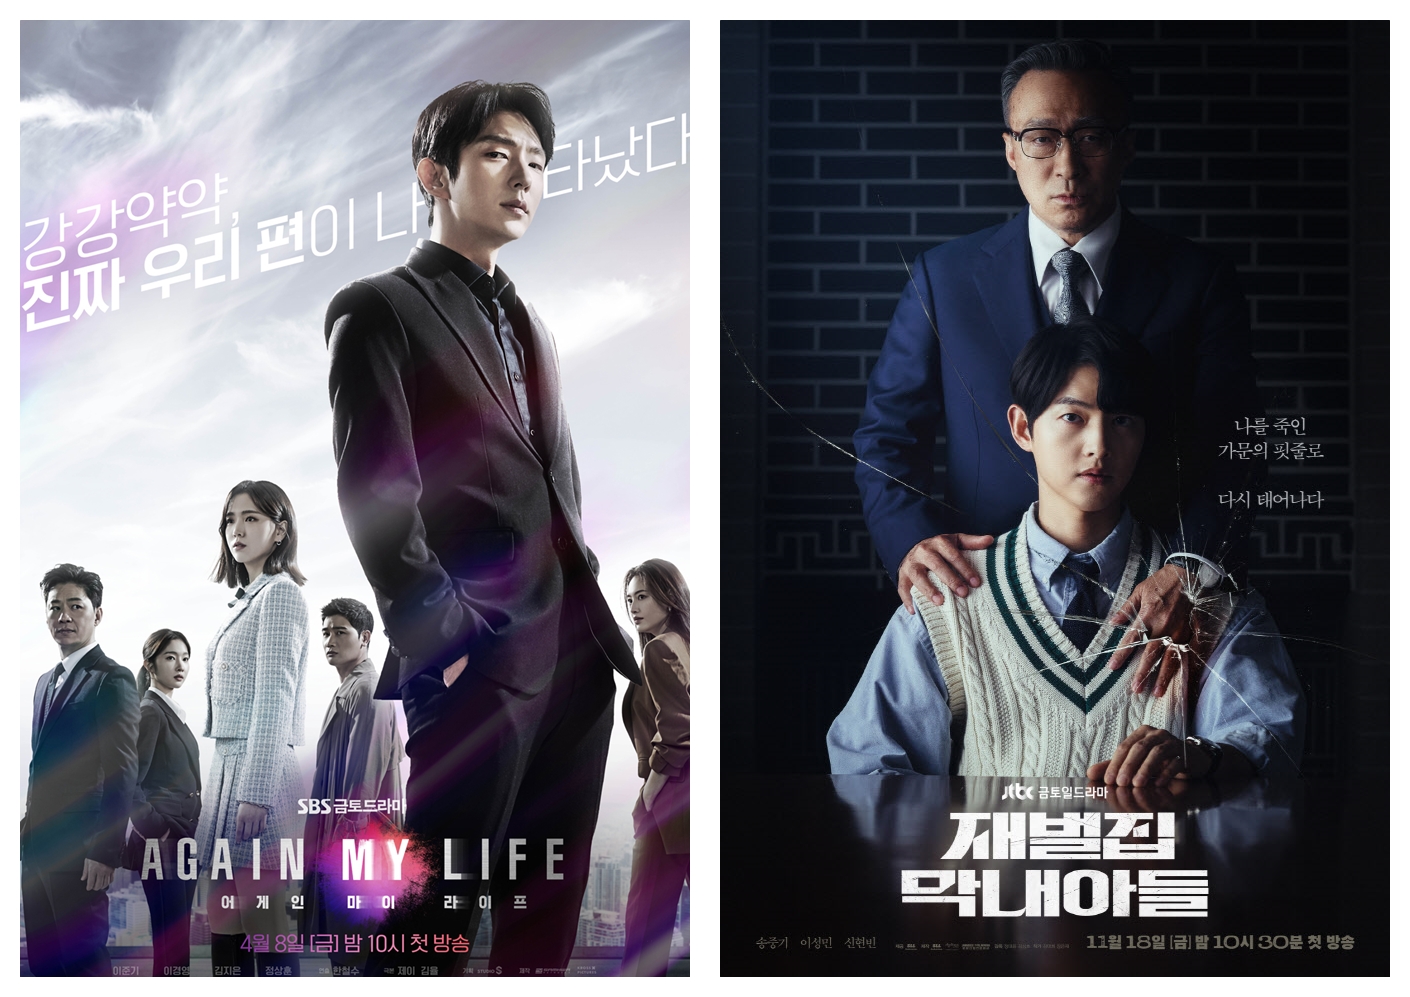 드라마 어게인 마이 라이프 포스터 (출처:SBS) , 재벌집 막내아들 포스터 (출처: JTBC) 